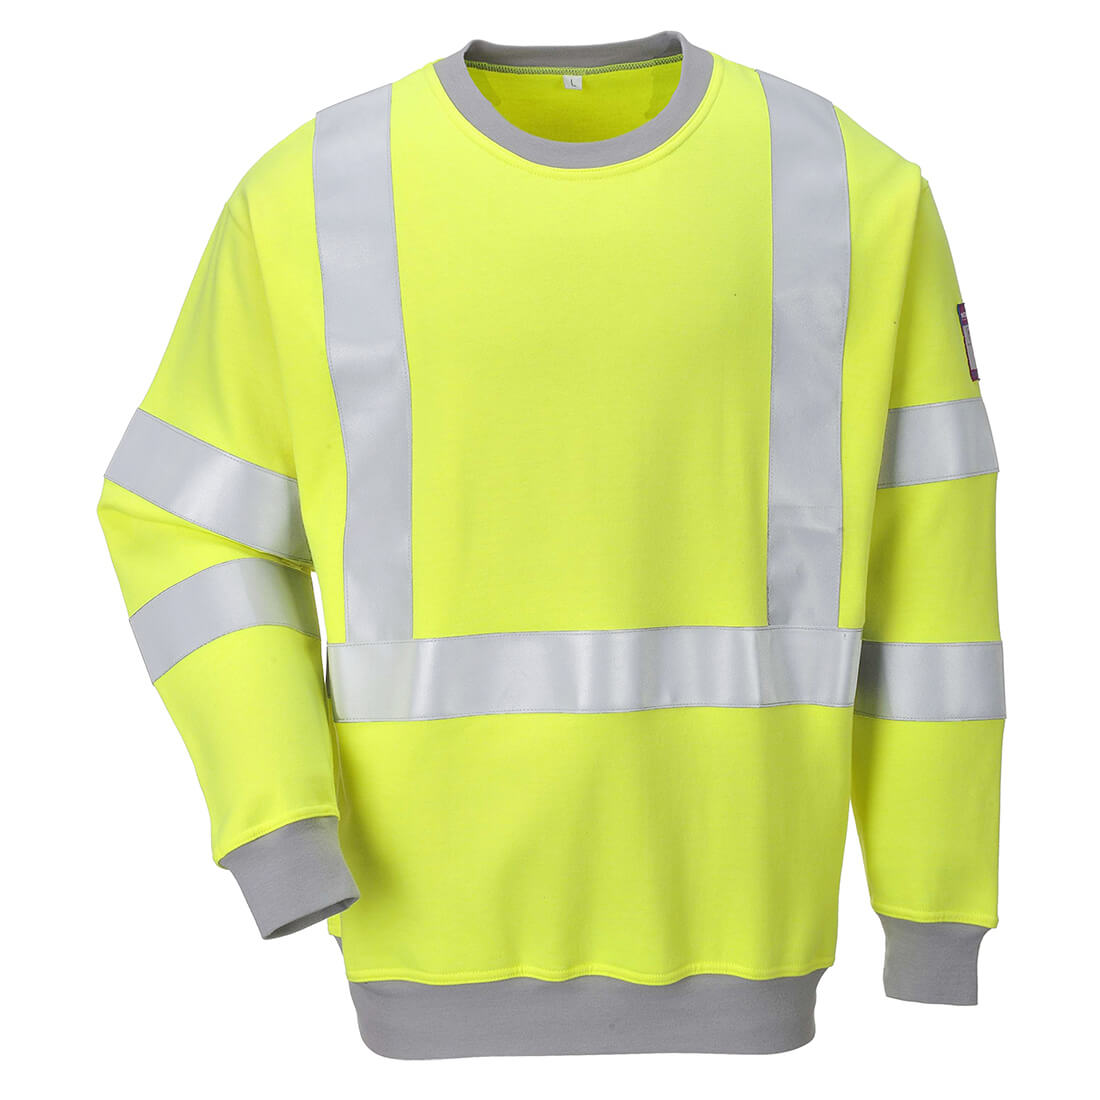 Image of Modaflame Mens Flame Resistant Hi Vis Sweatshirt Yellow S